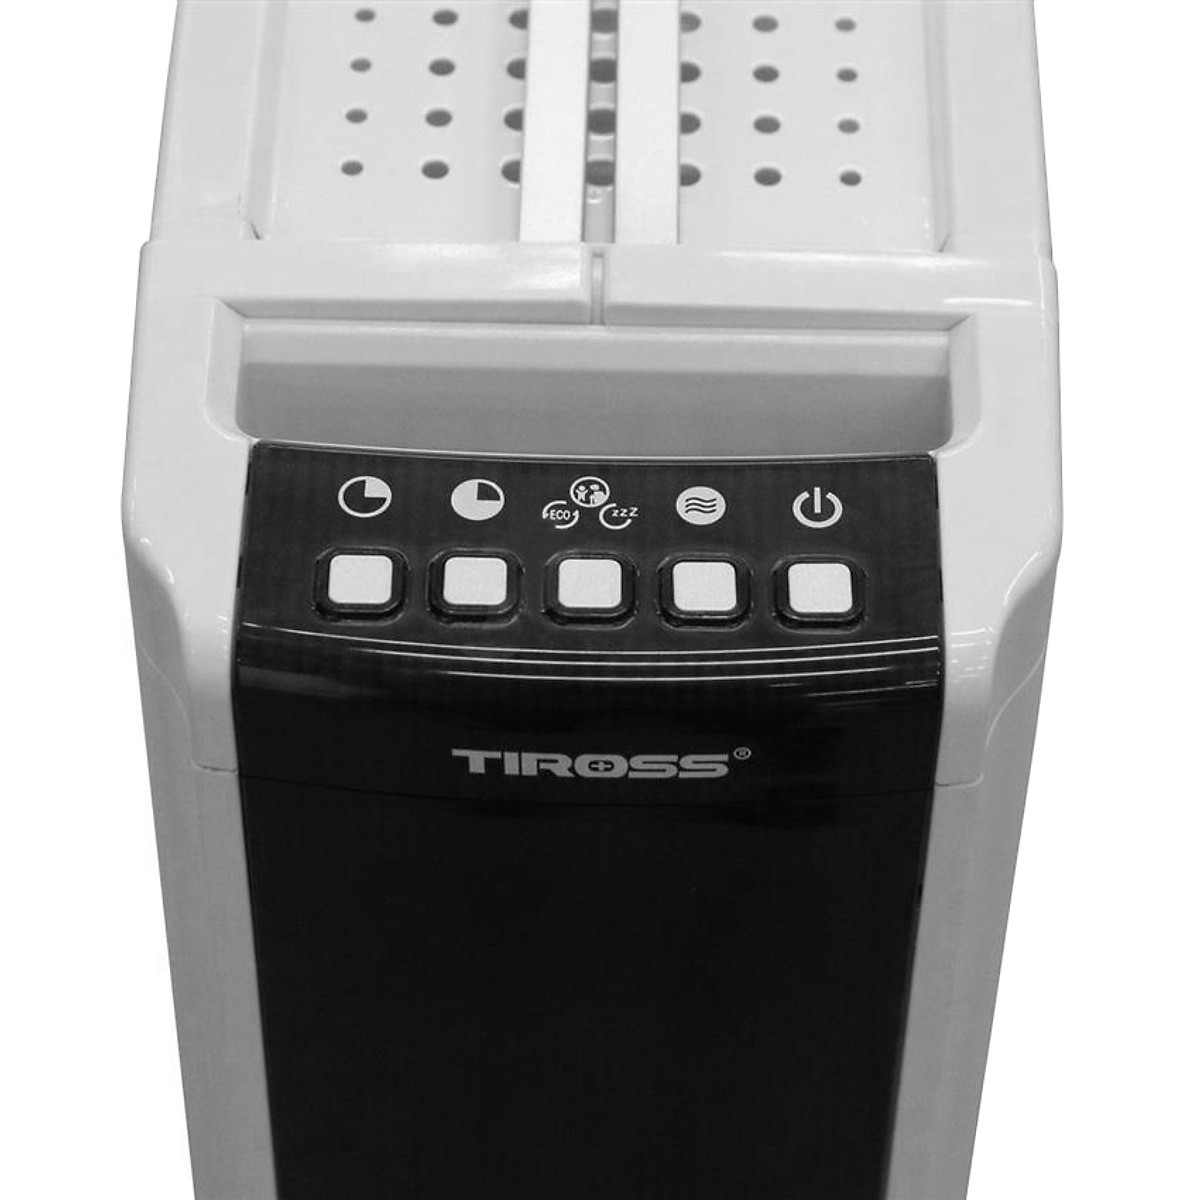 Máy sưởi dầu Tiross TS9212 11 thanh